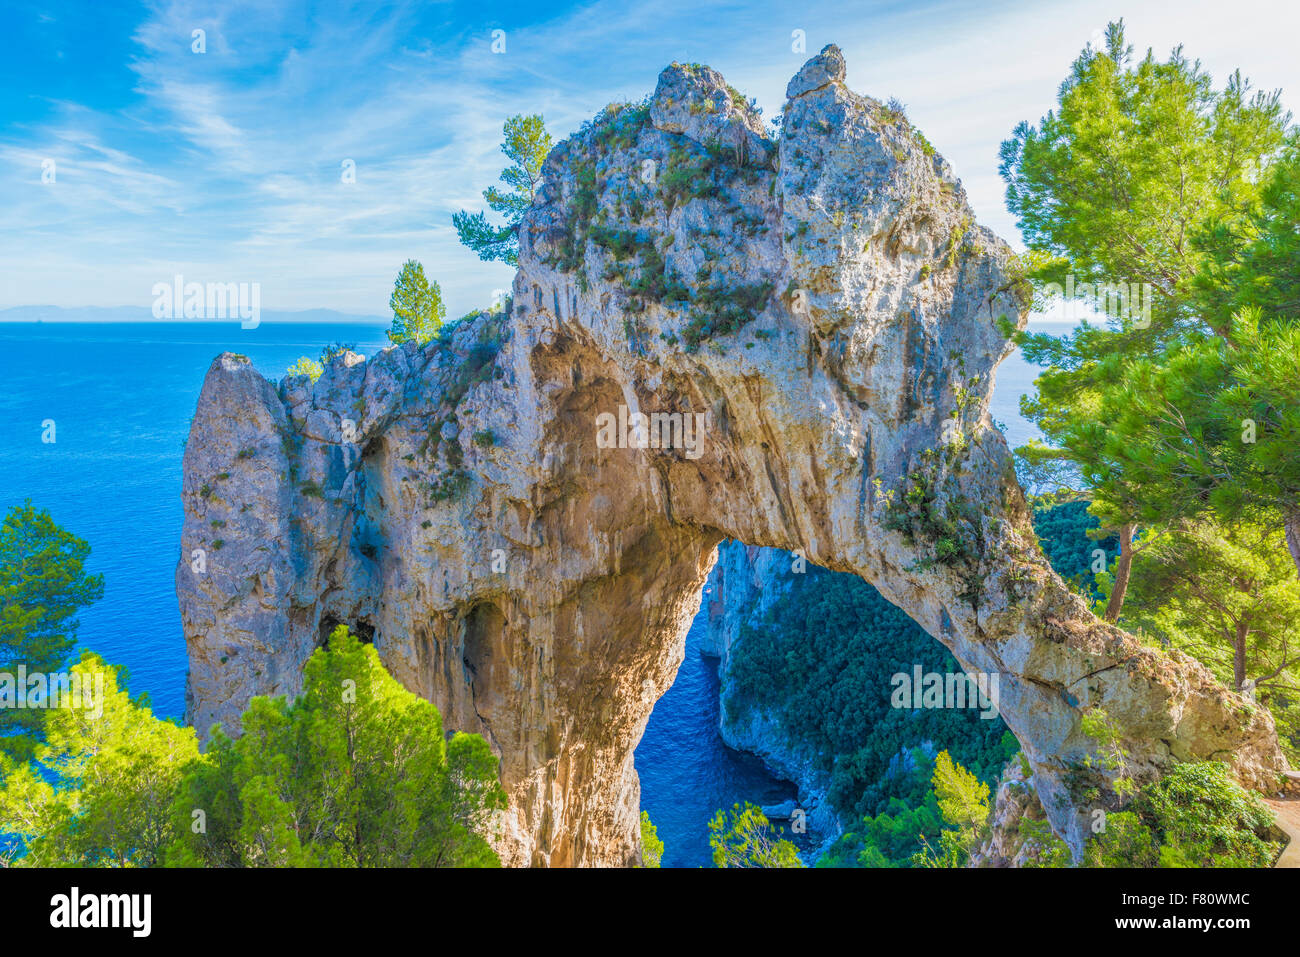 L'Arche, quadriple arche naturelle sur les falaises au-dessus de Capri et la mer Tyrrhénienne, Italie Banque D'Images